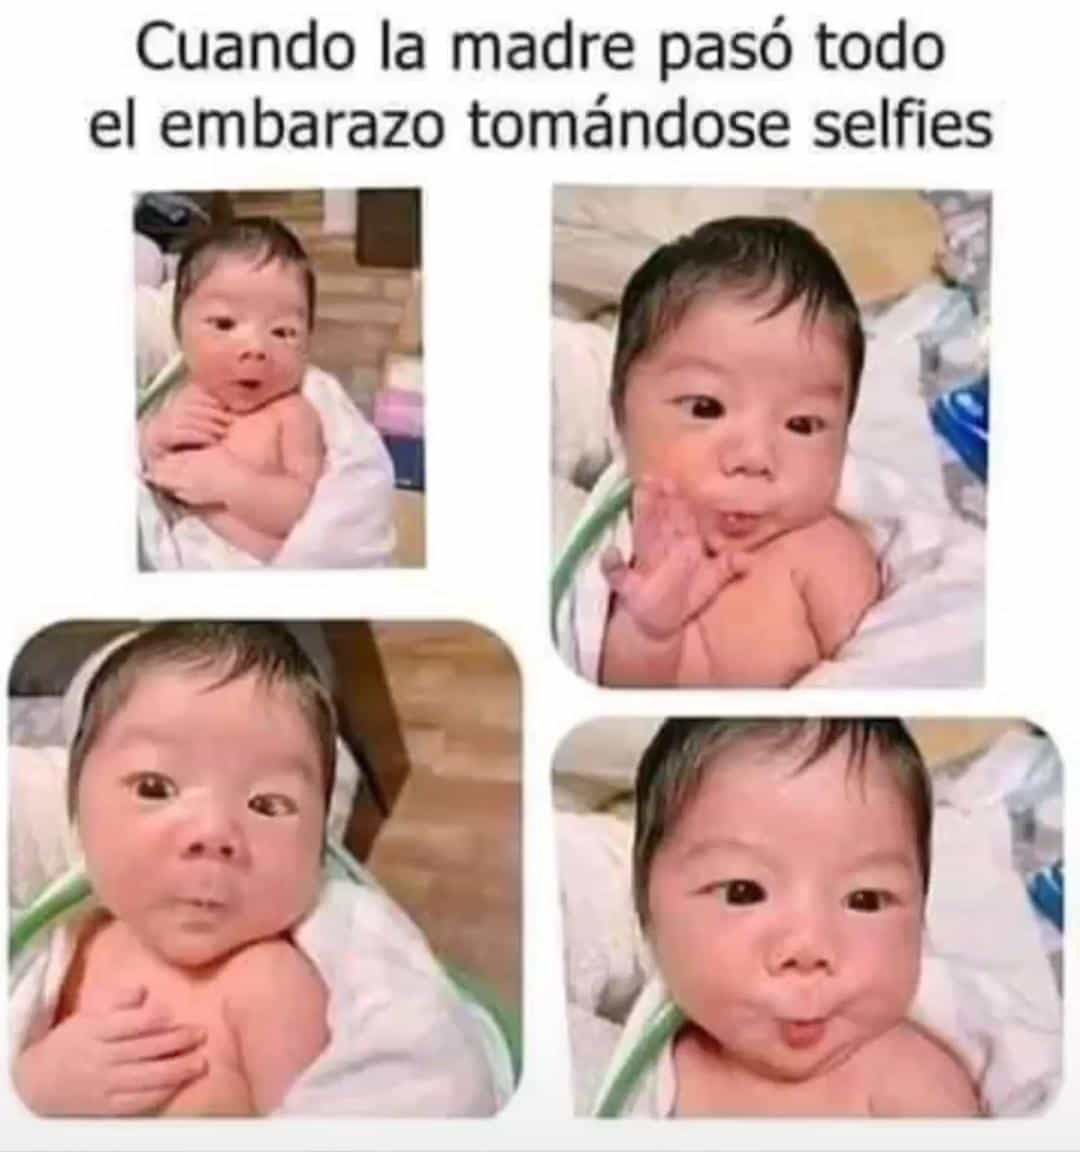 Selfies durante el embarazo